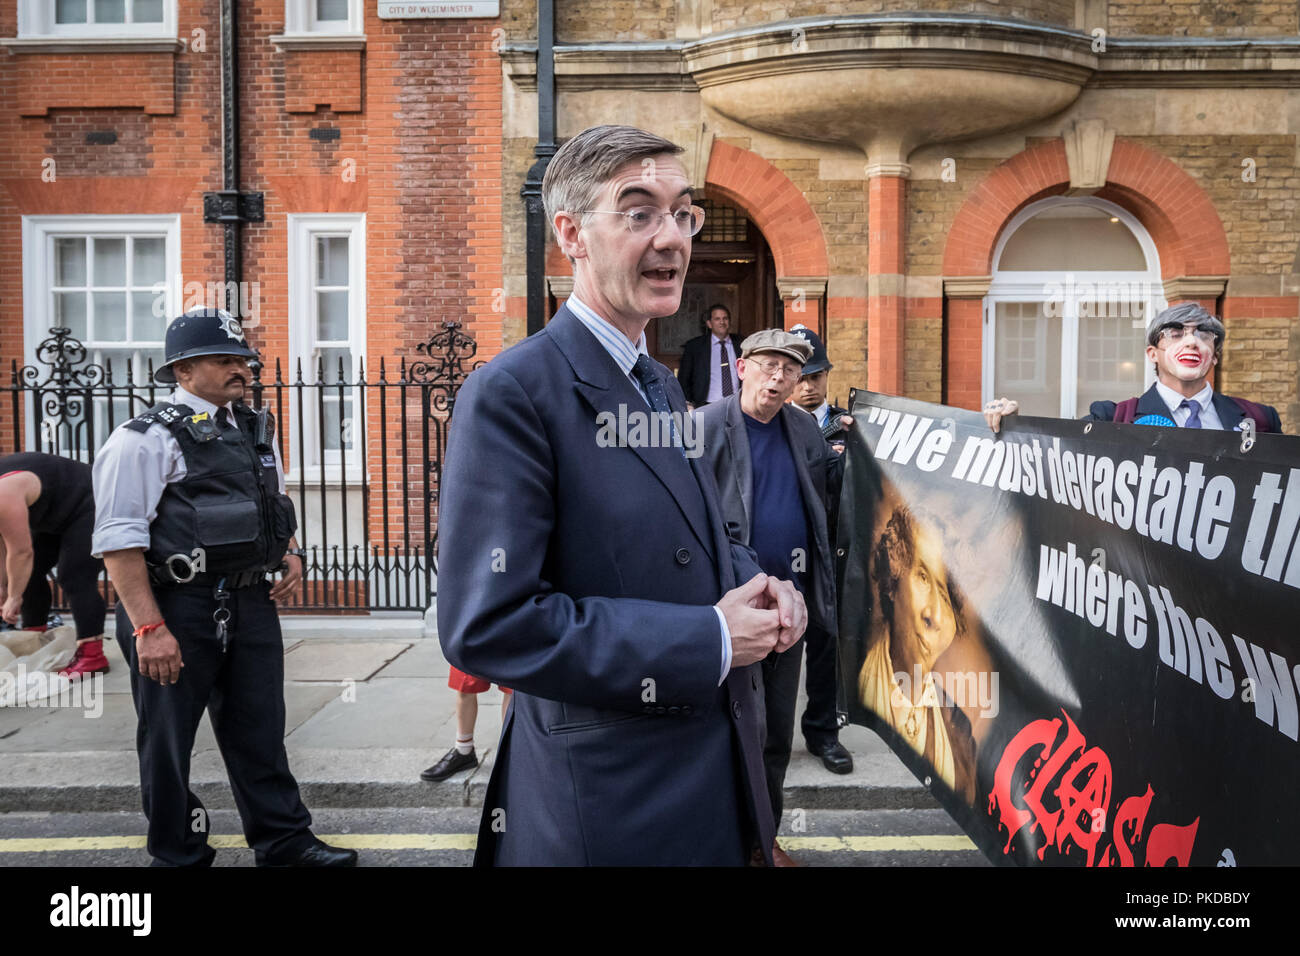 Jacob Rees-Mogg et sa famille sont confrontés à des manifestants anti-capitaliste à partir de la guerre de classe de groupe d'activiste à l'extérieur de sa maison de Westminster. Londres, Royaume-Uni. Banque D'Images